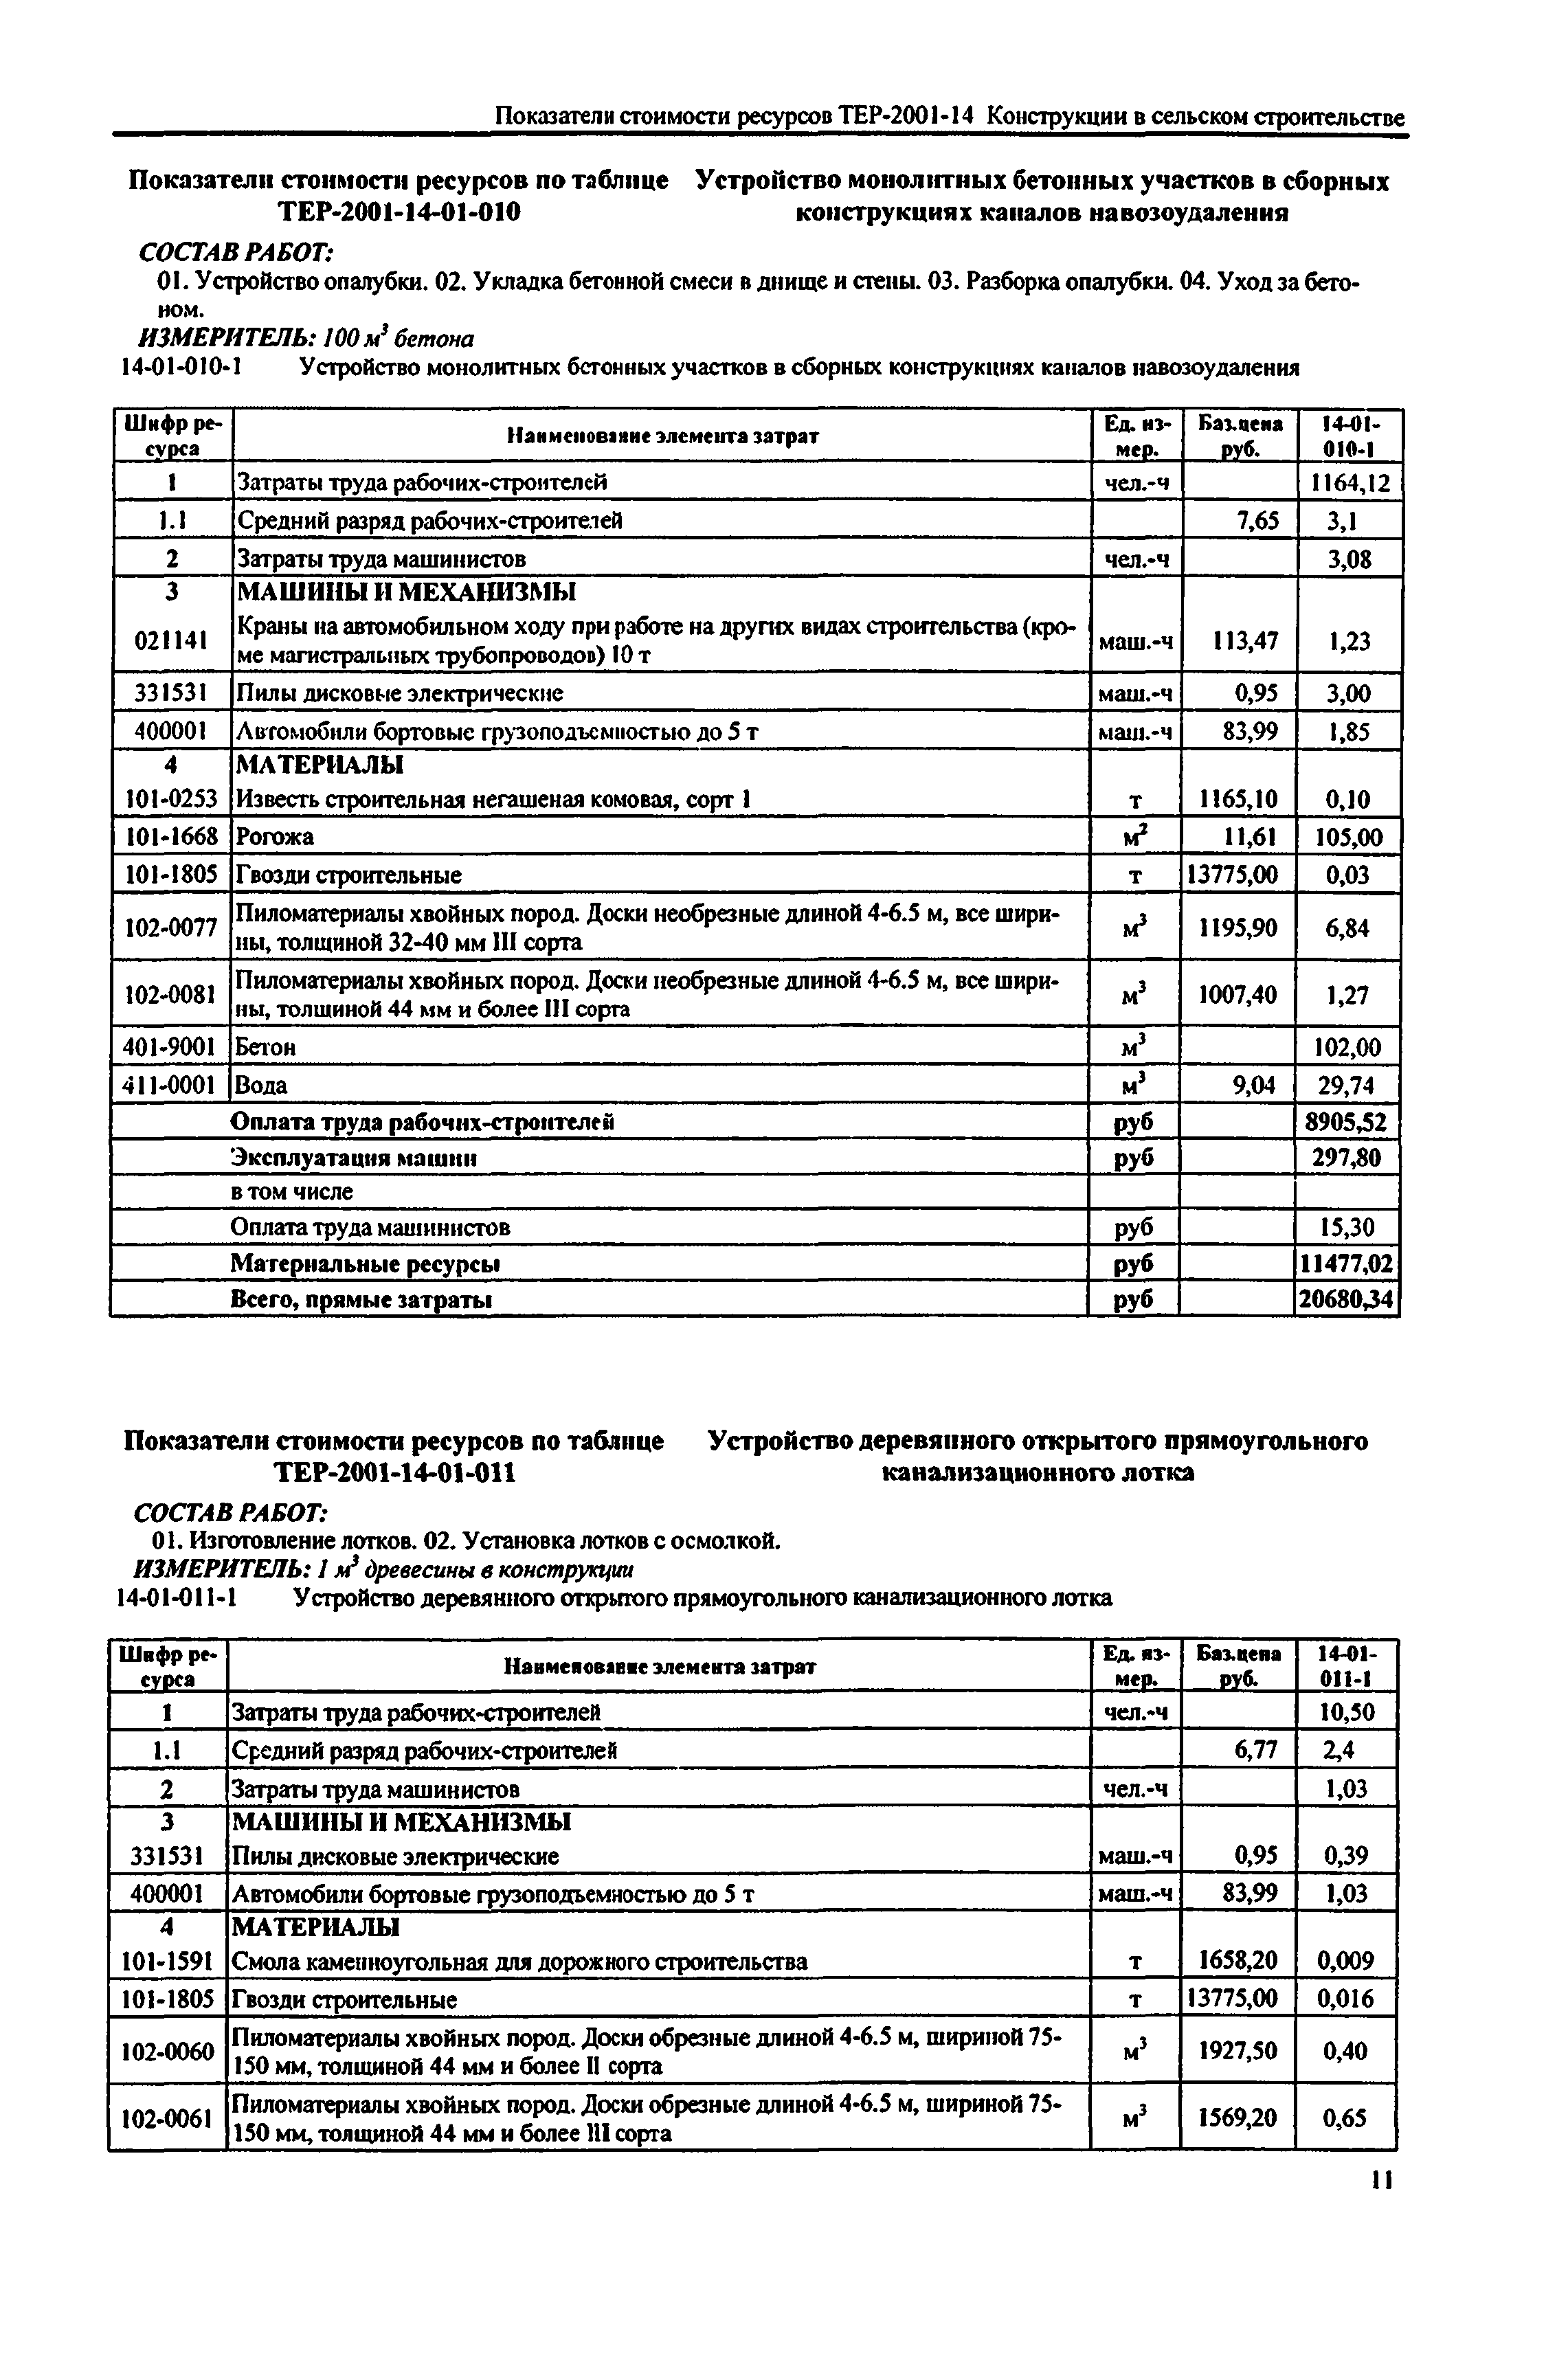 Справочное пособие к ТЕР 81-02-14-2001